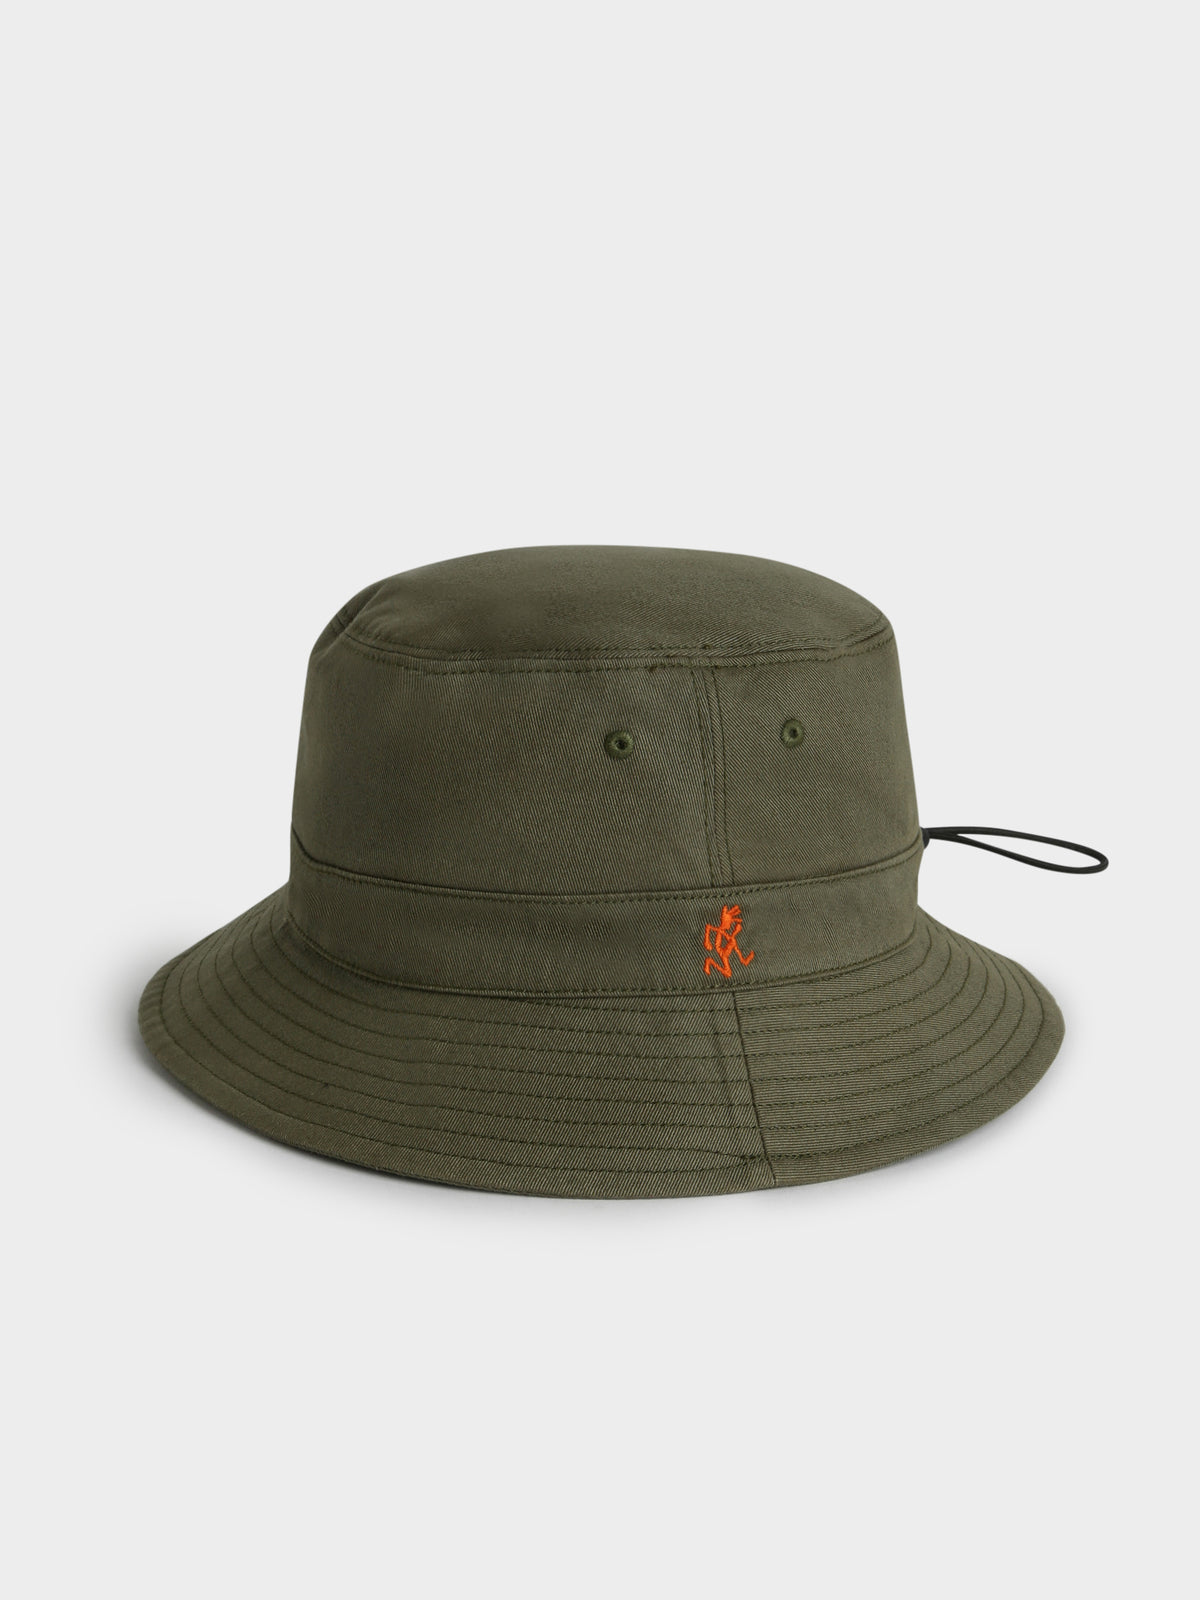 Gramicci x Deus Reversible Bucket Hat in Olive Green